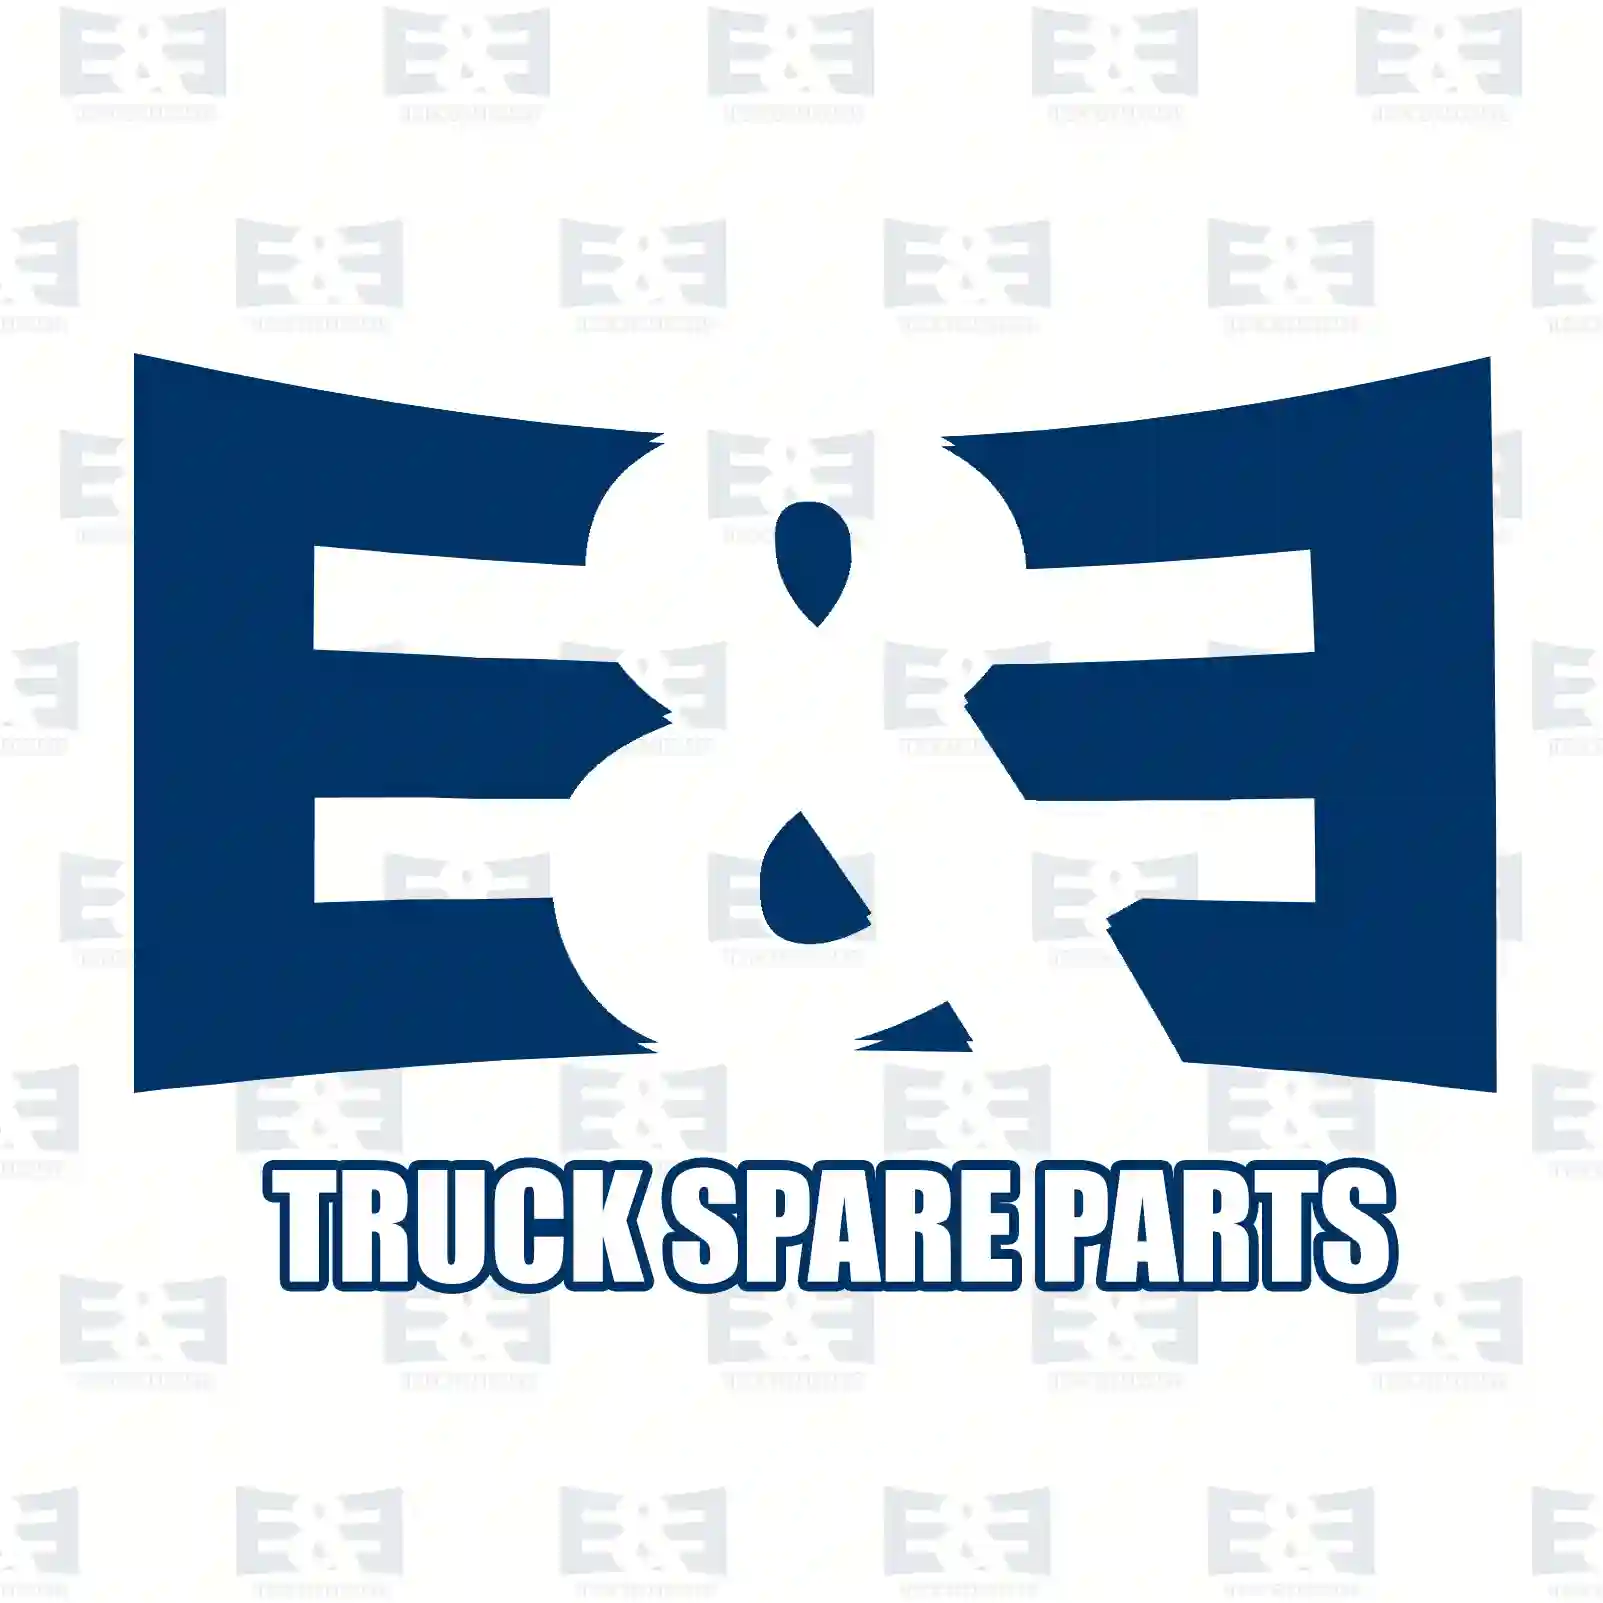 Engine hood slot, upper, 2E2275070, 9417500184 ||  2E2275070 E&E Truck Spare Parts | Truck Spare Parts, Auotomotive Spare Parts Engine hood slot, upper, 2E2275070, 9417500184 ||  2E2275070 E&E Truck Spare Parts | Truck Spare Parts, Auotomotive Spare Parts